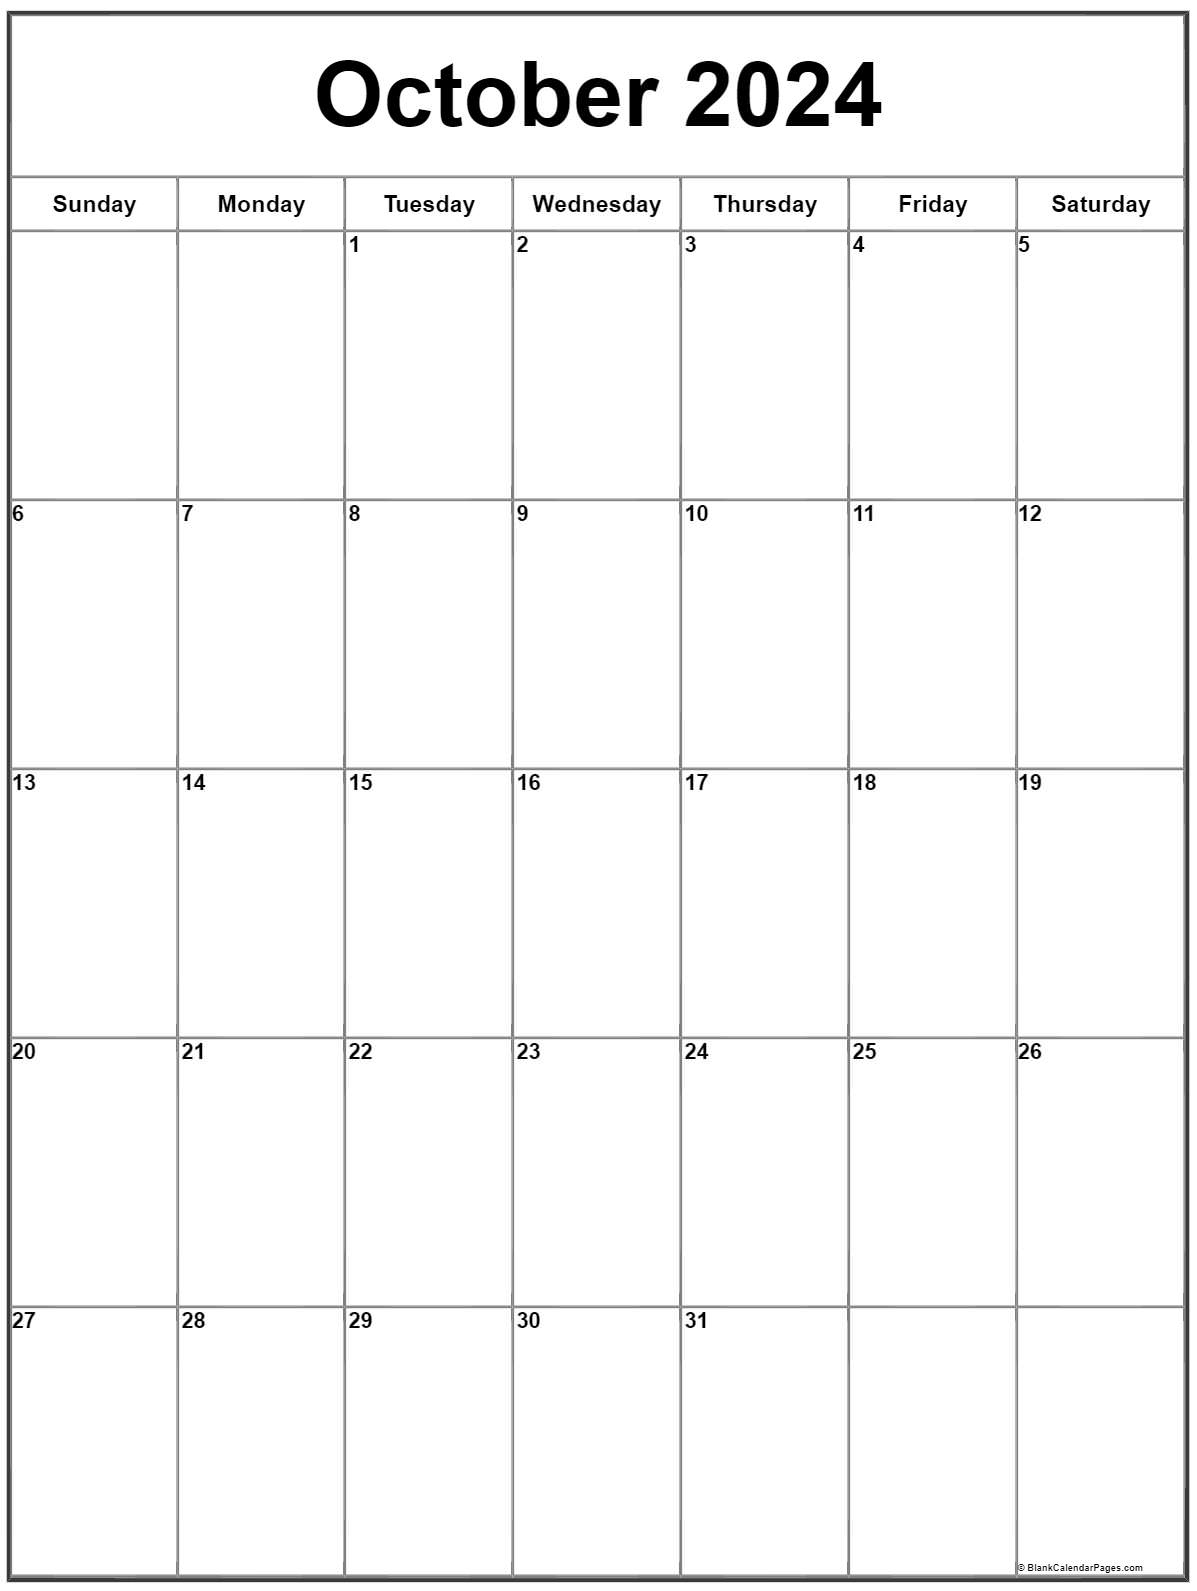 2024 Calendar October Printable 2024 CALENDAR PRINTABLE - Free Printable 2024 Calendar Augustt September October